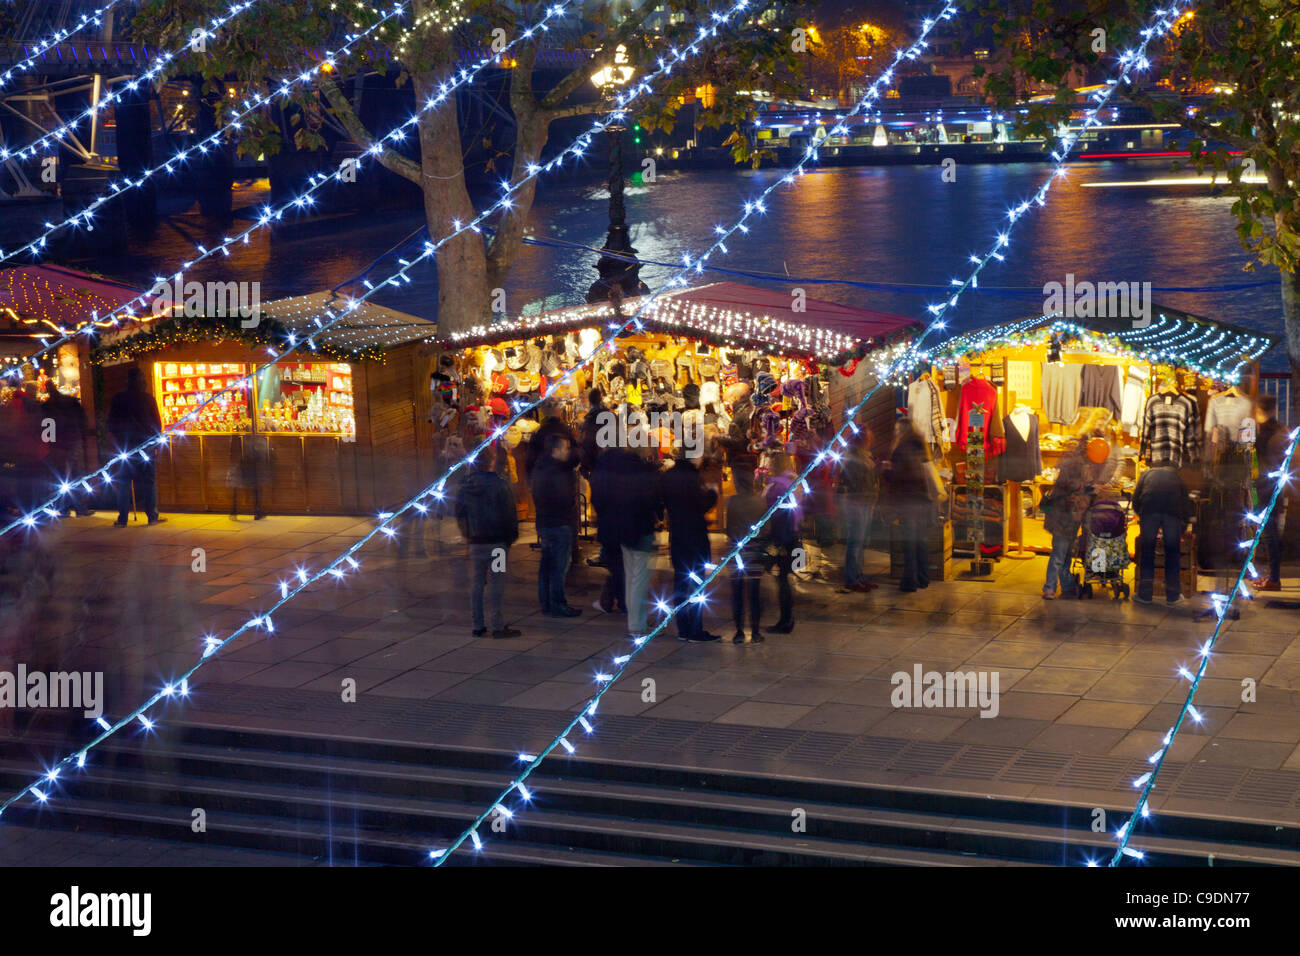 Les étals du marché de Noël allemand sur la rive sud, Londres la nuit, à l'intermédiaire de lignes de lumières de Noël Banque D'Images